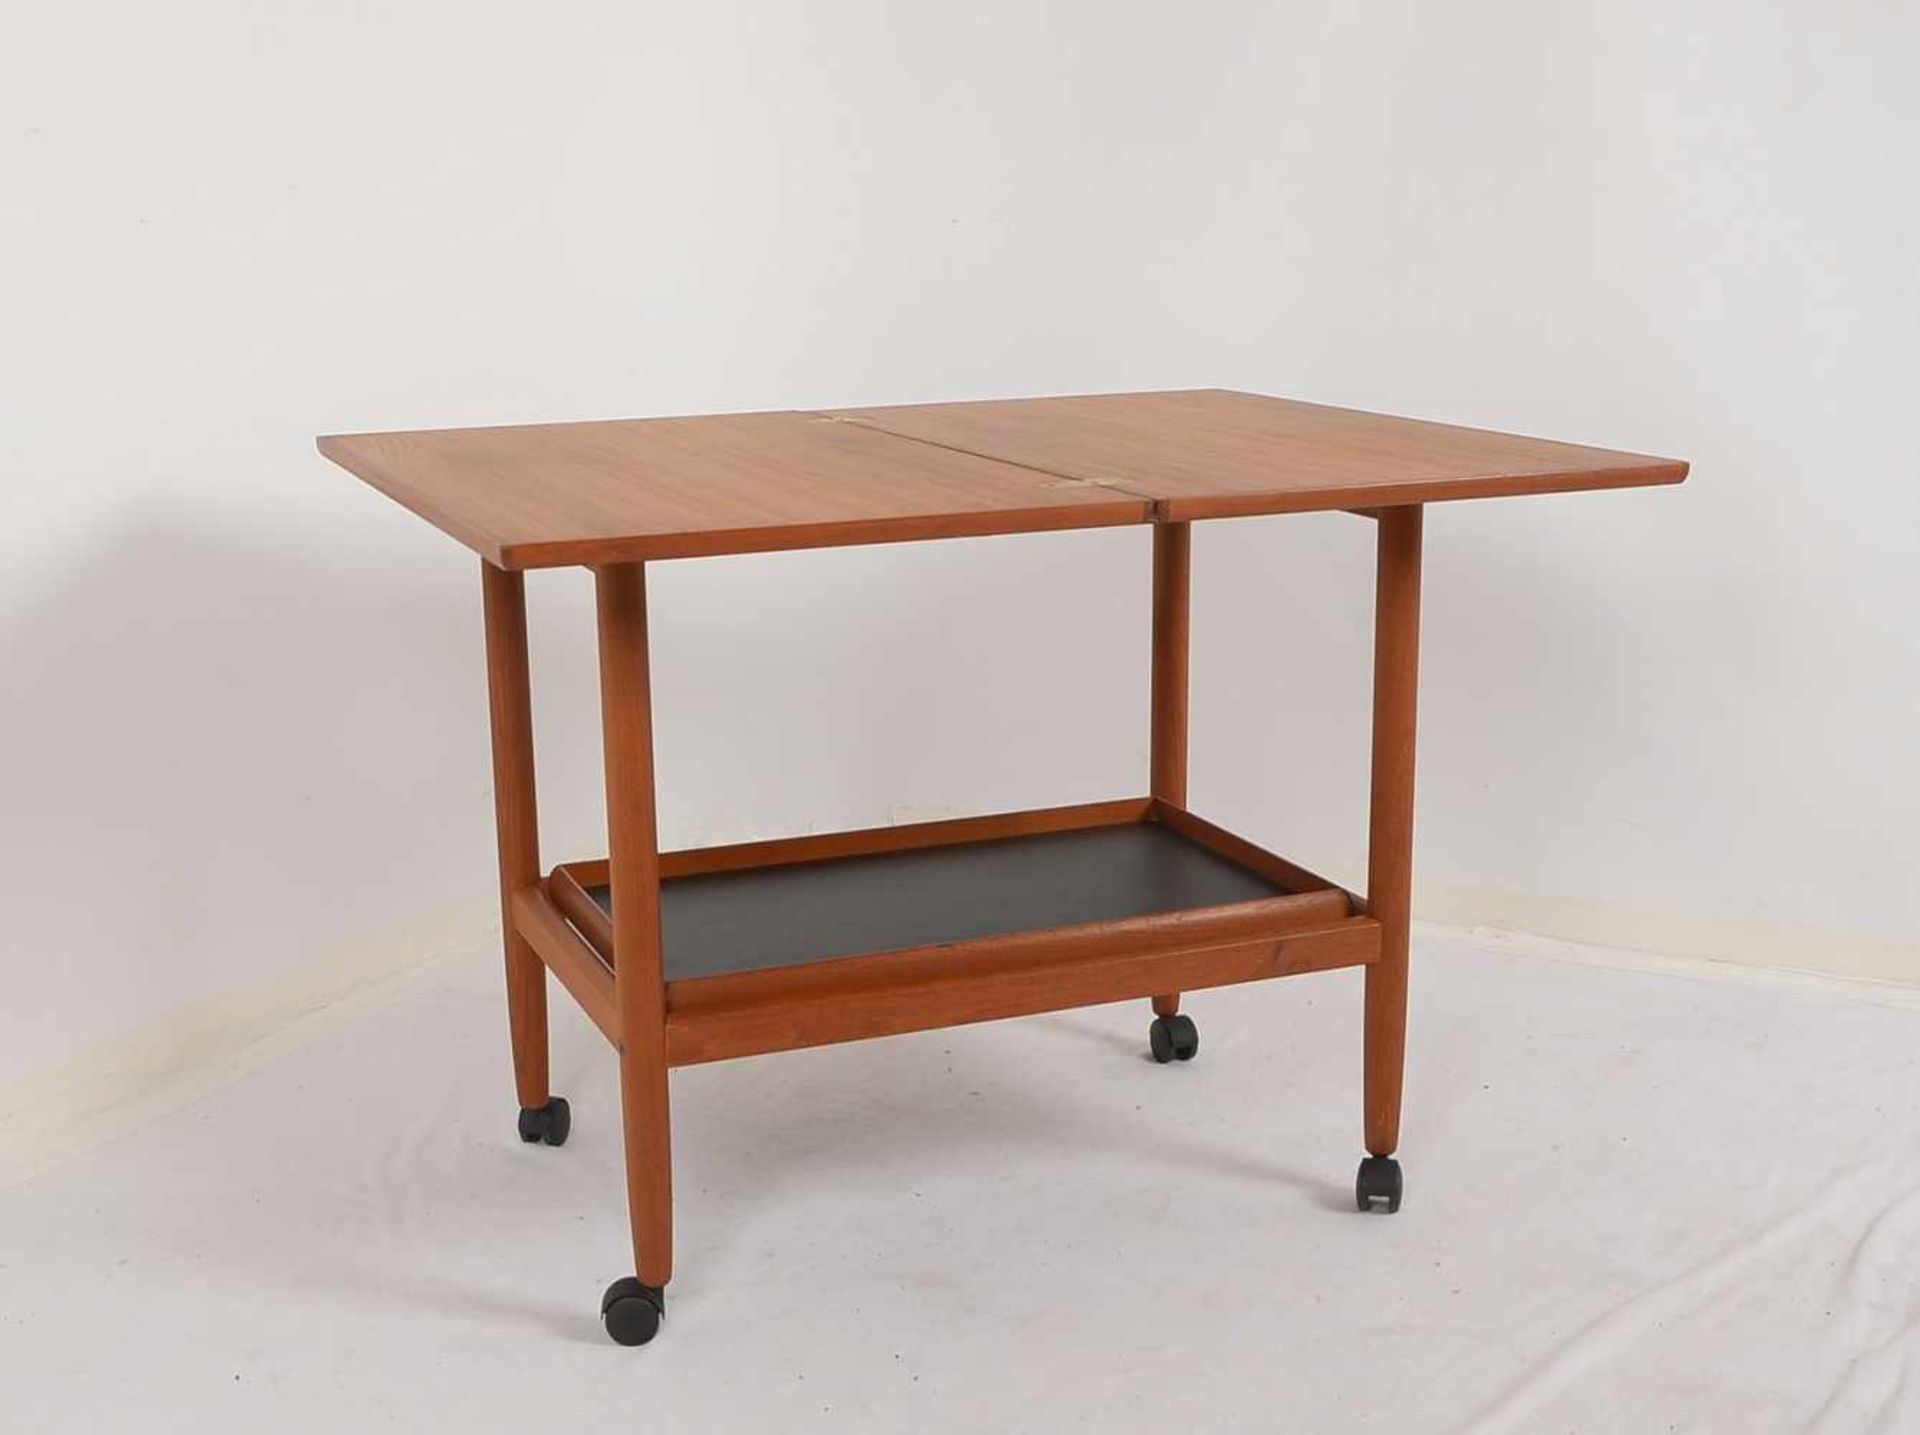 Spieltisch, Dänemark, Teak, Deckplatte ausklappbar/drehbar, untere Ebene als Tablett - Bild 3 aus 3